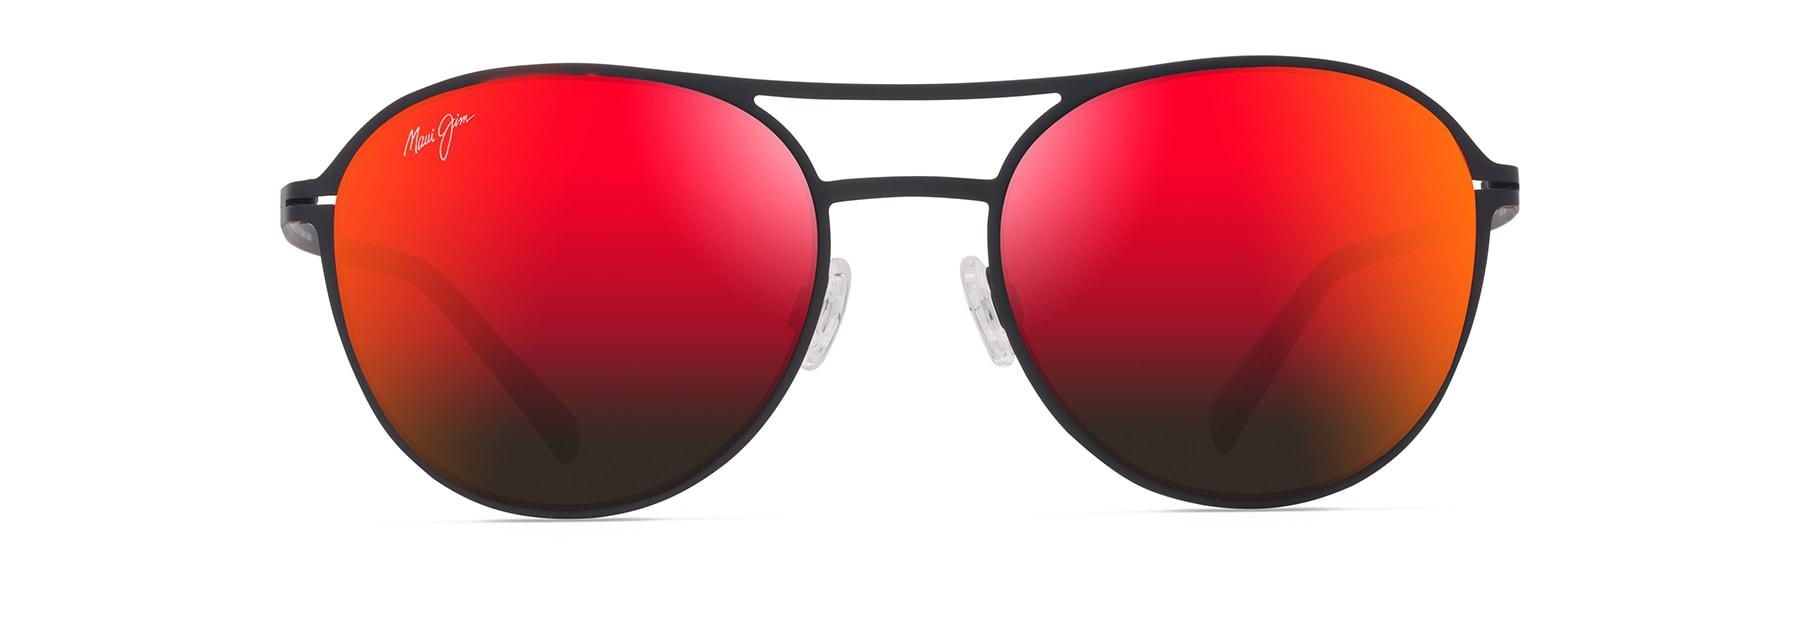 Maui Jim Alika Nuetral Grey Geometric Unisex Sunglasses 837-02 49  603429066161 - Sunglasses, Alika - Jomashop